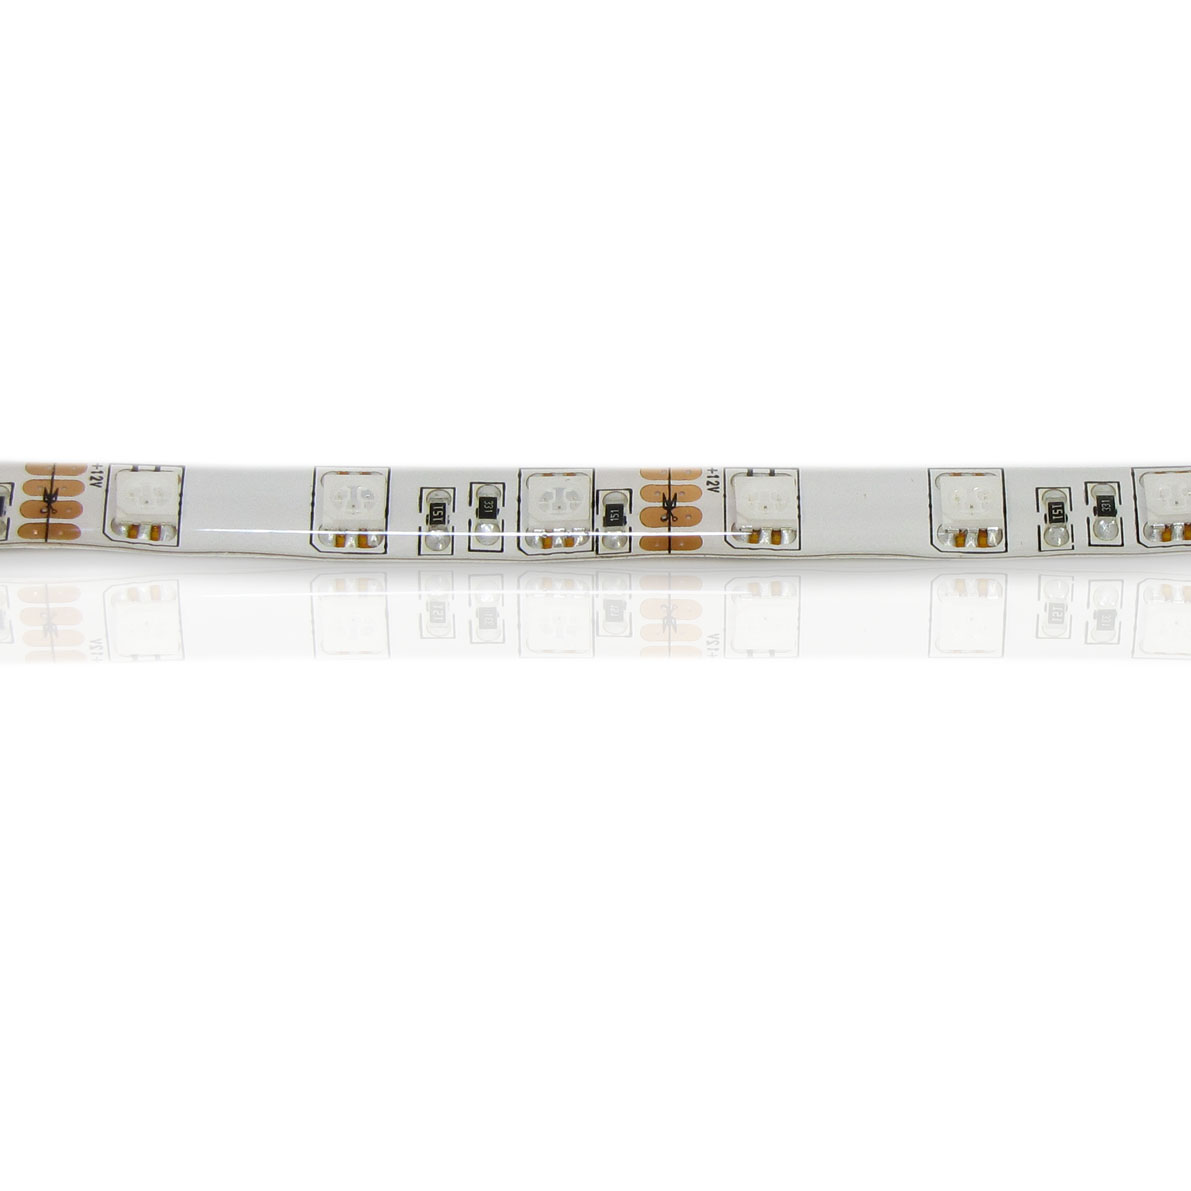 светодиодная лента lux class, 5050, 60 led/m, rgb, 12v, ip65, артикул 30929